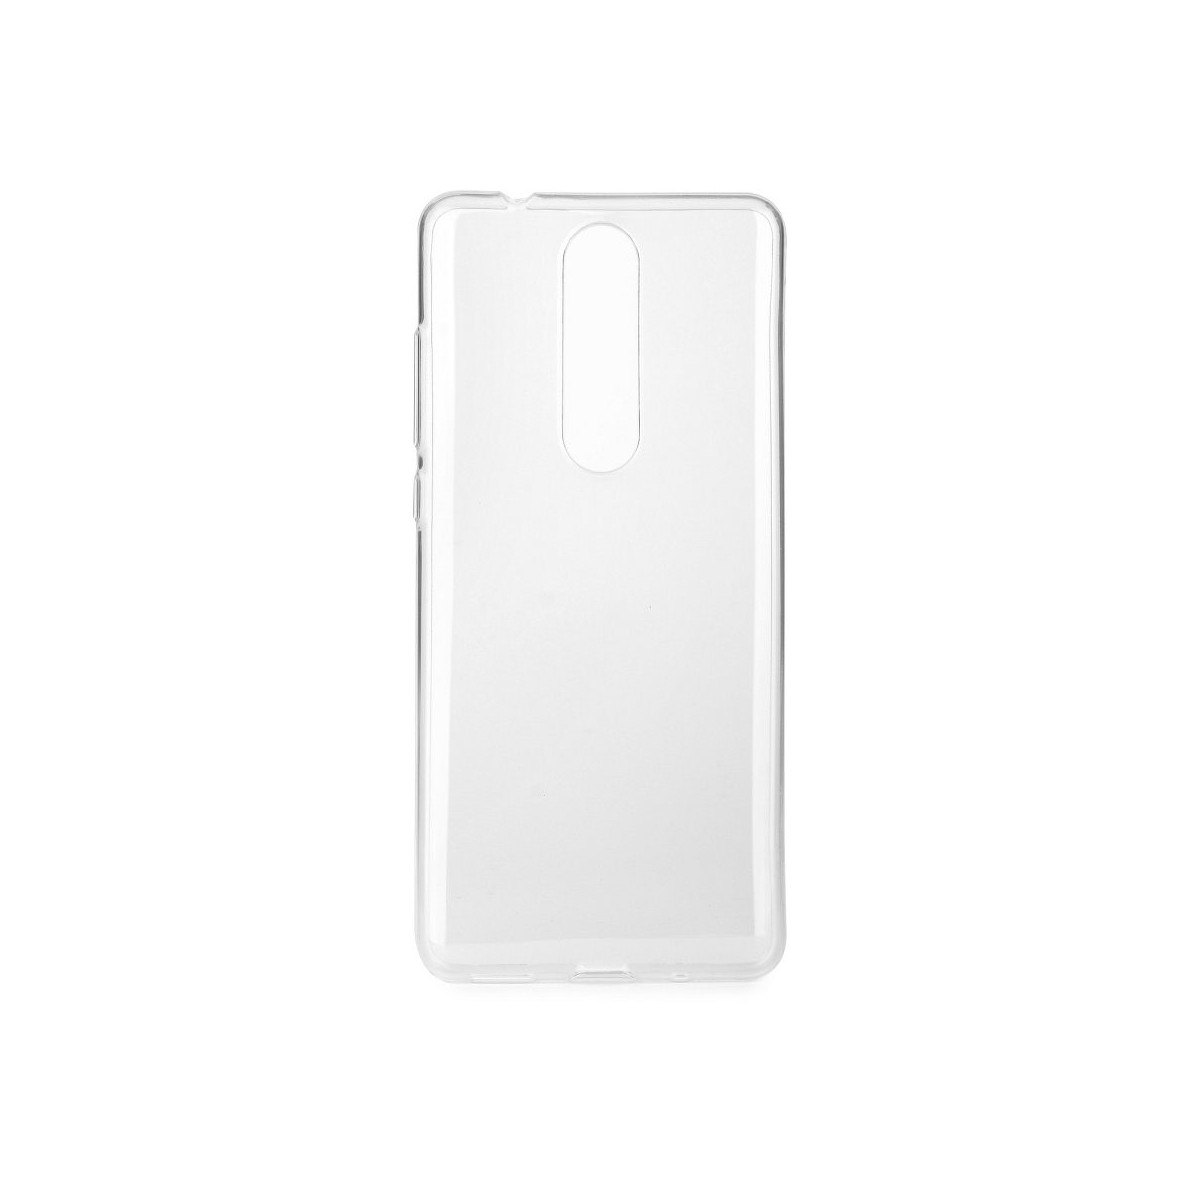 Coque Nokia 5.1 transparente et souple - Crazy Kase